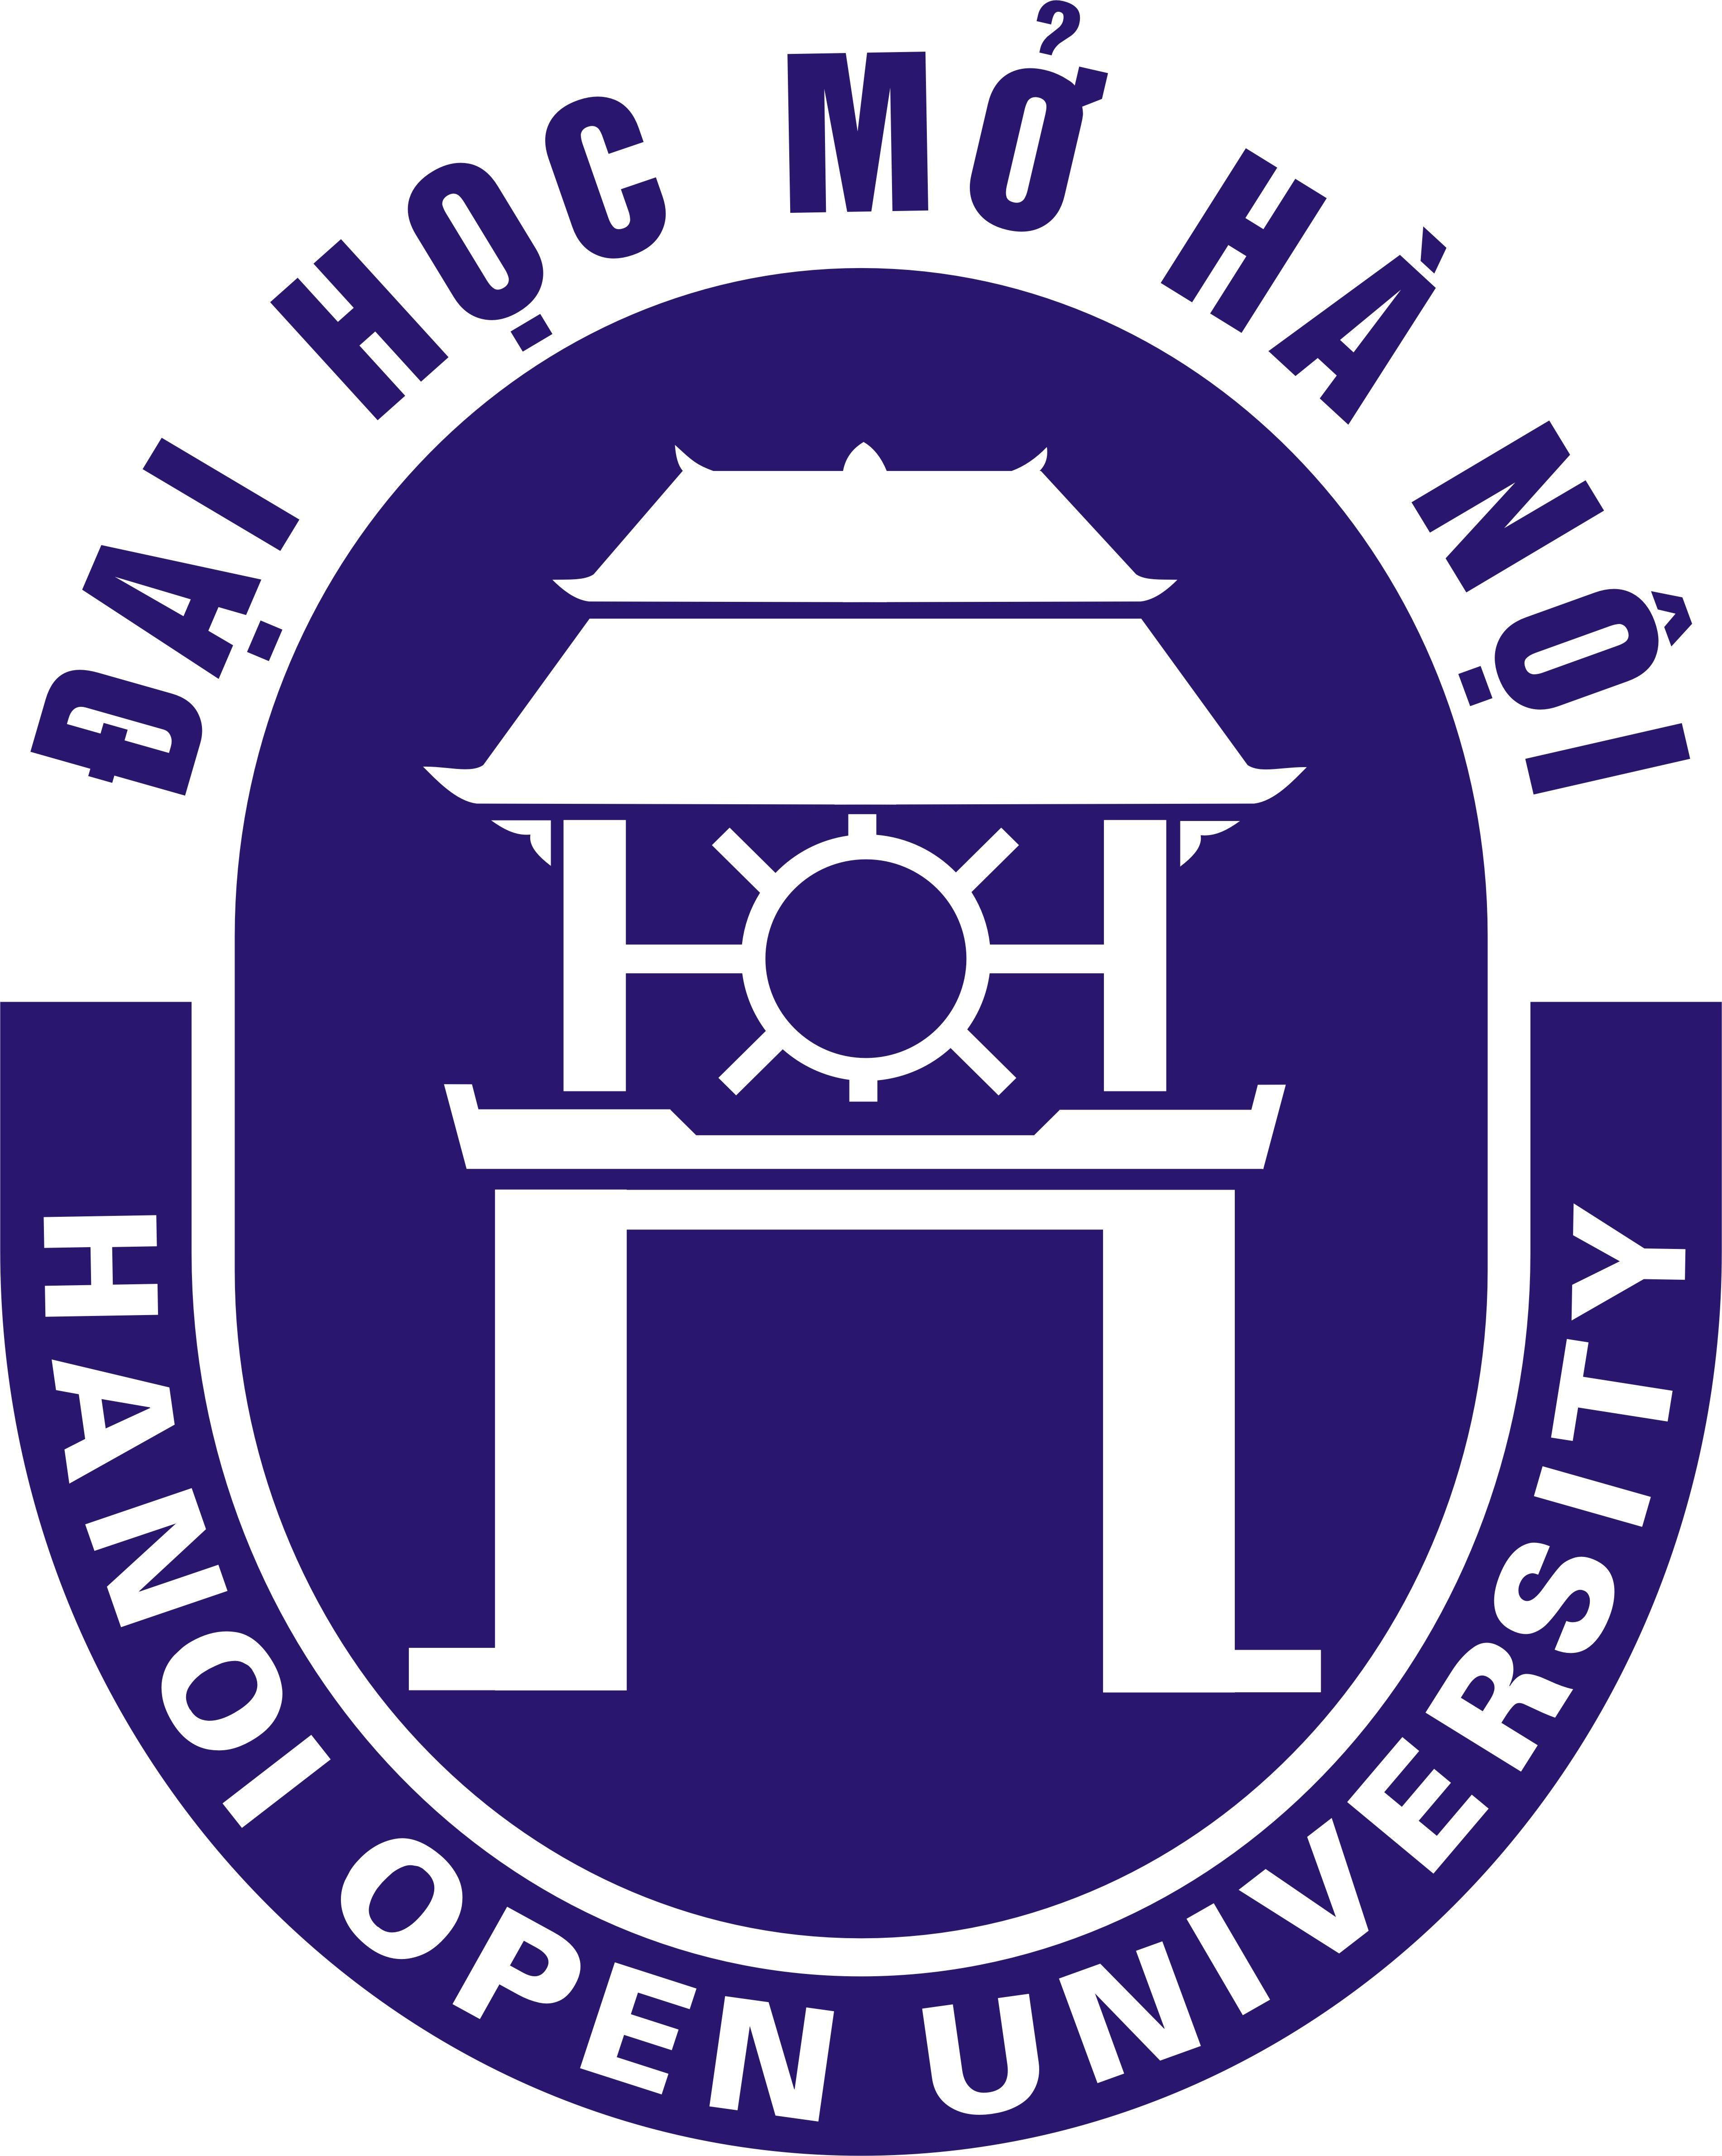 Hou Logo - Logo Houướng Nghiệp Chất Lượng Caoướng Nghiệp Chất Lượng Cao